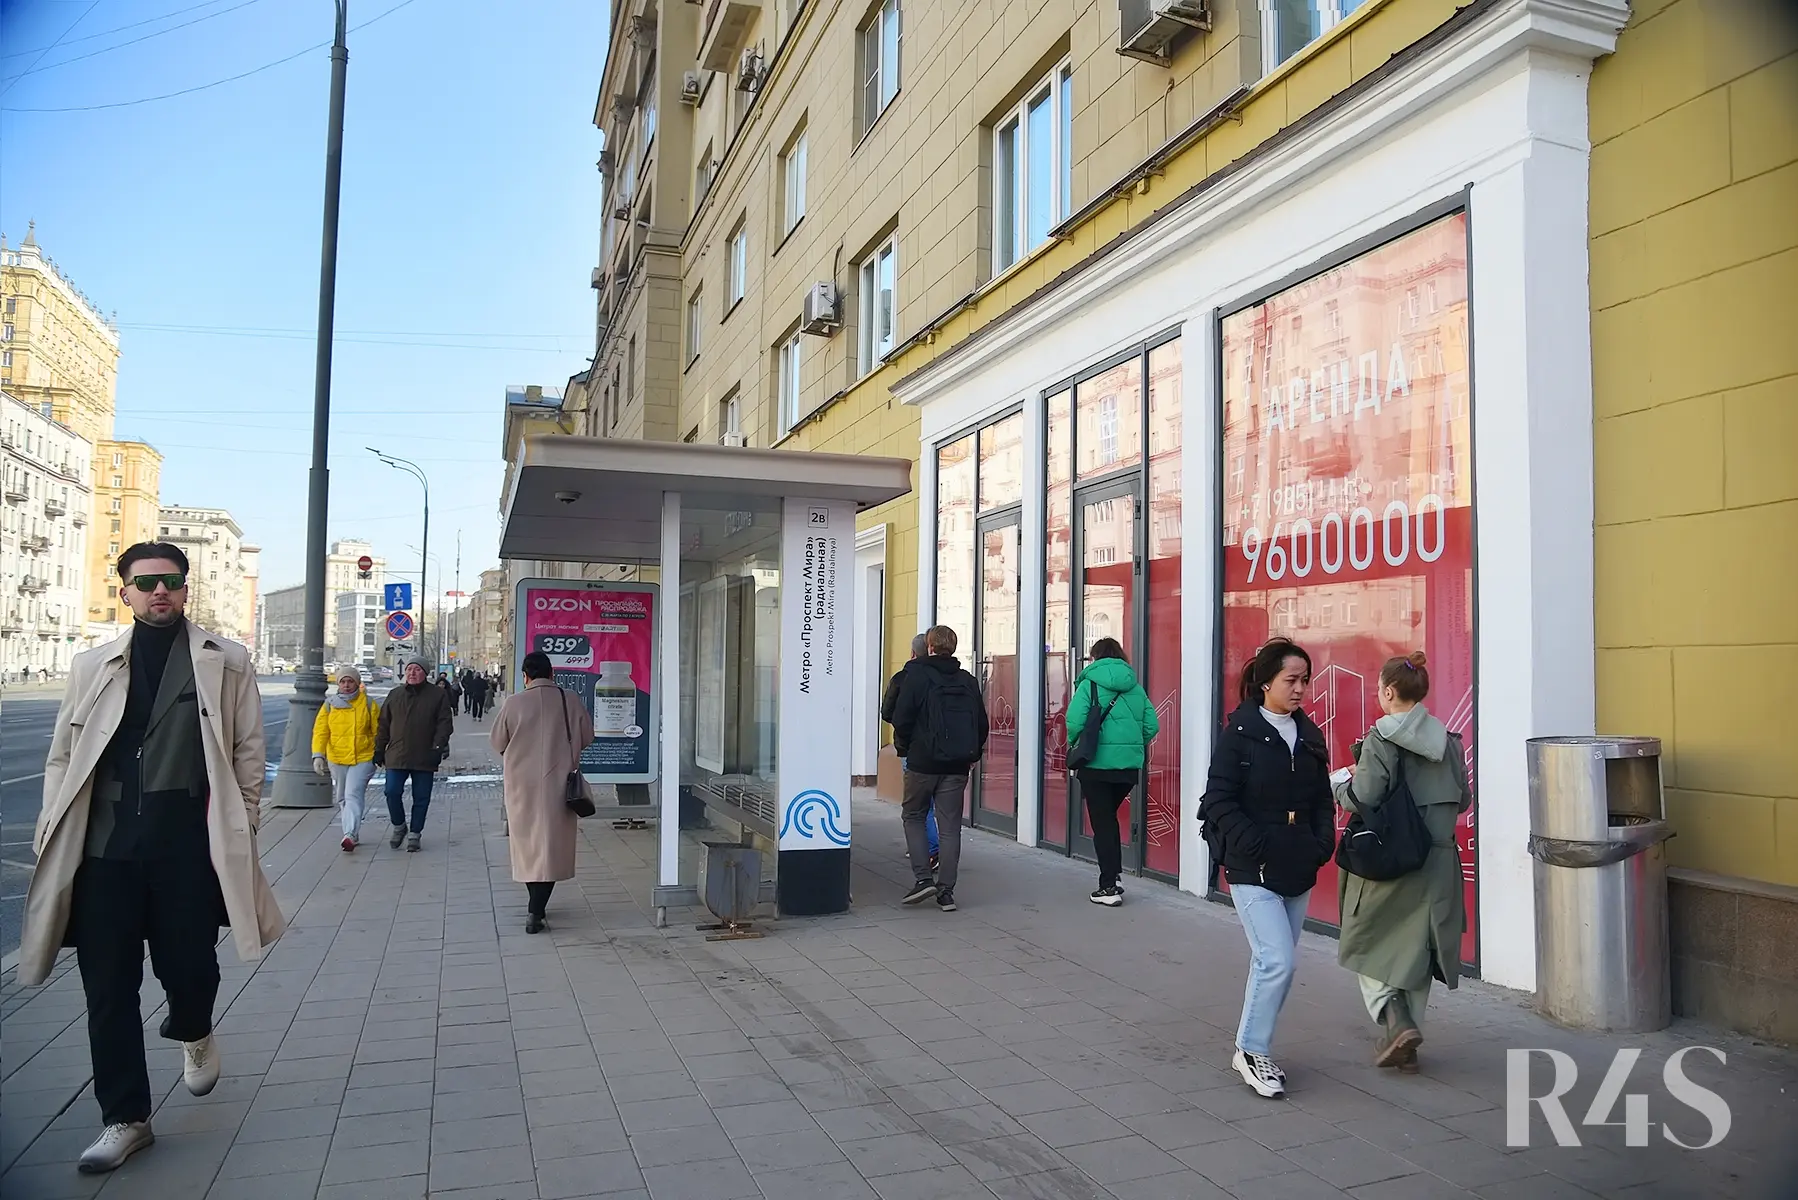 Аренда торговых помещений площадью 15.1 - 84.4 м2 в Москве:  проспект Мира, 48 R4S | Realty4Sale